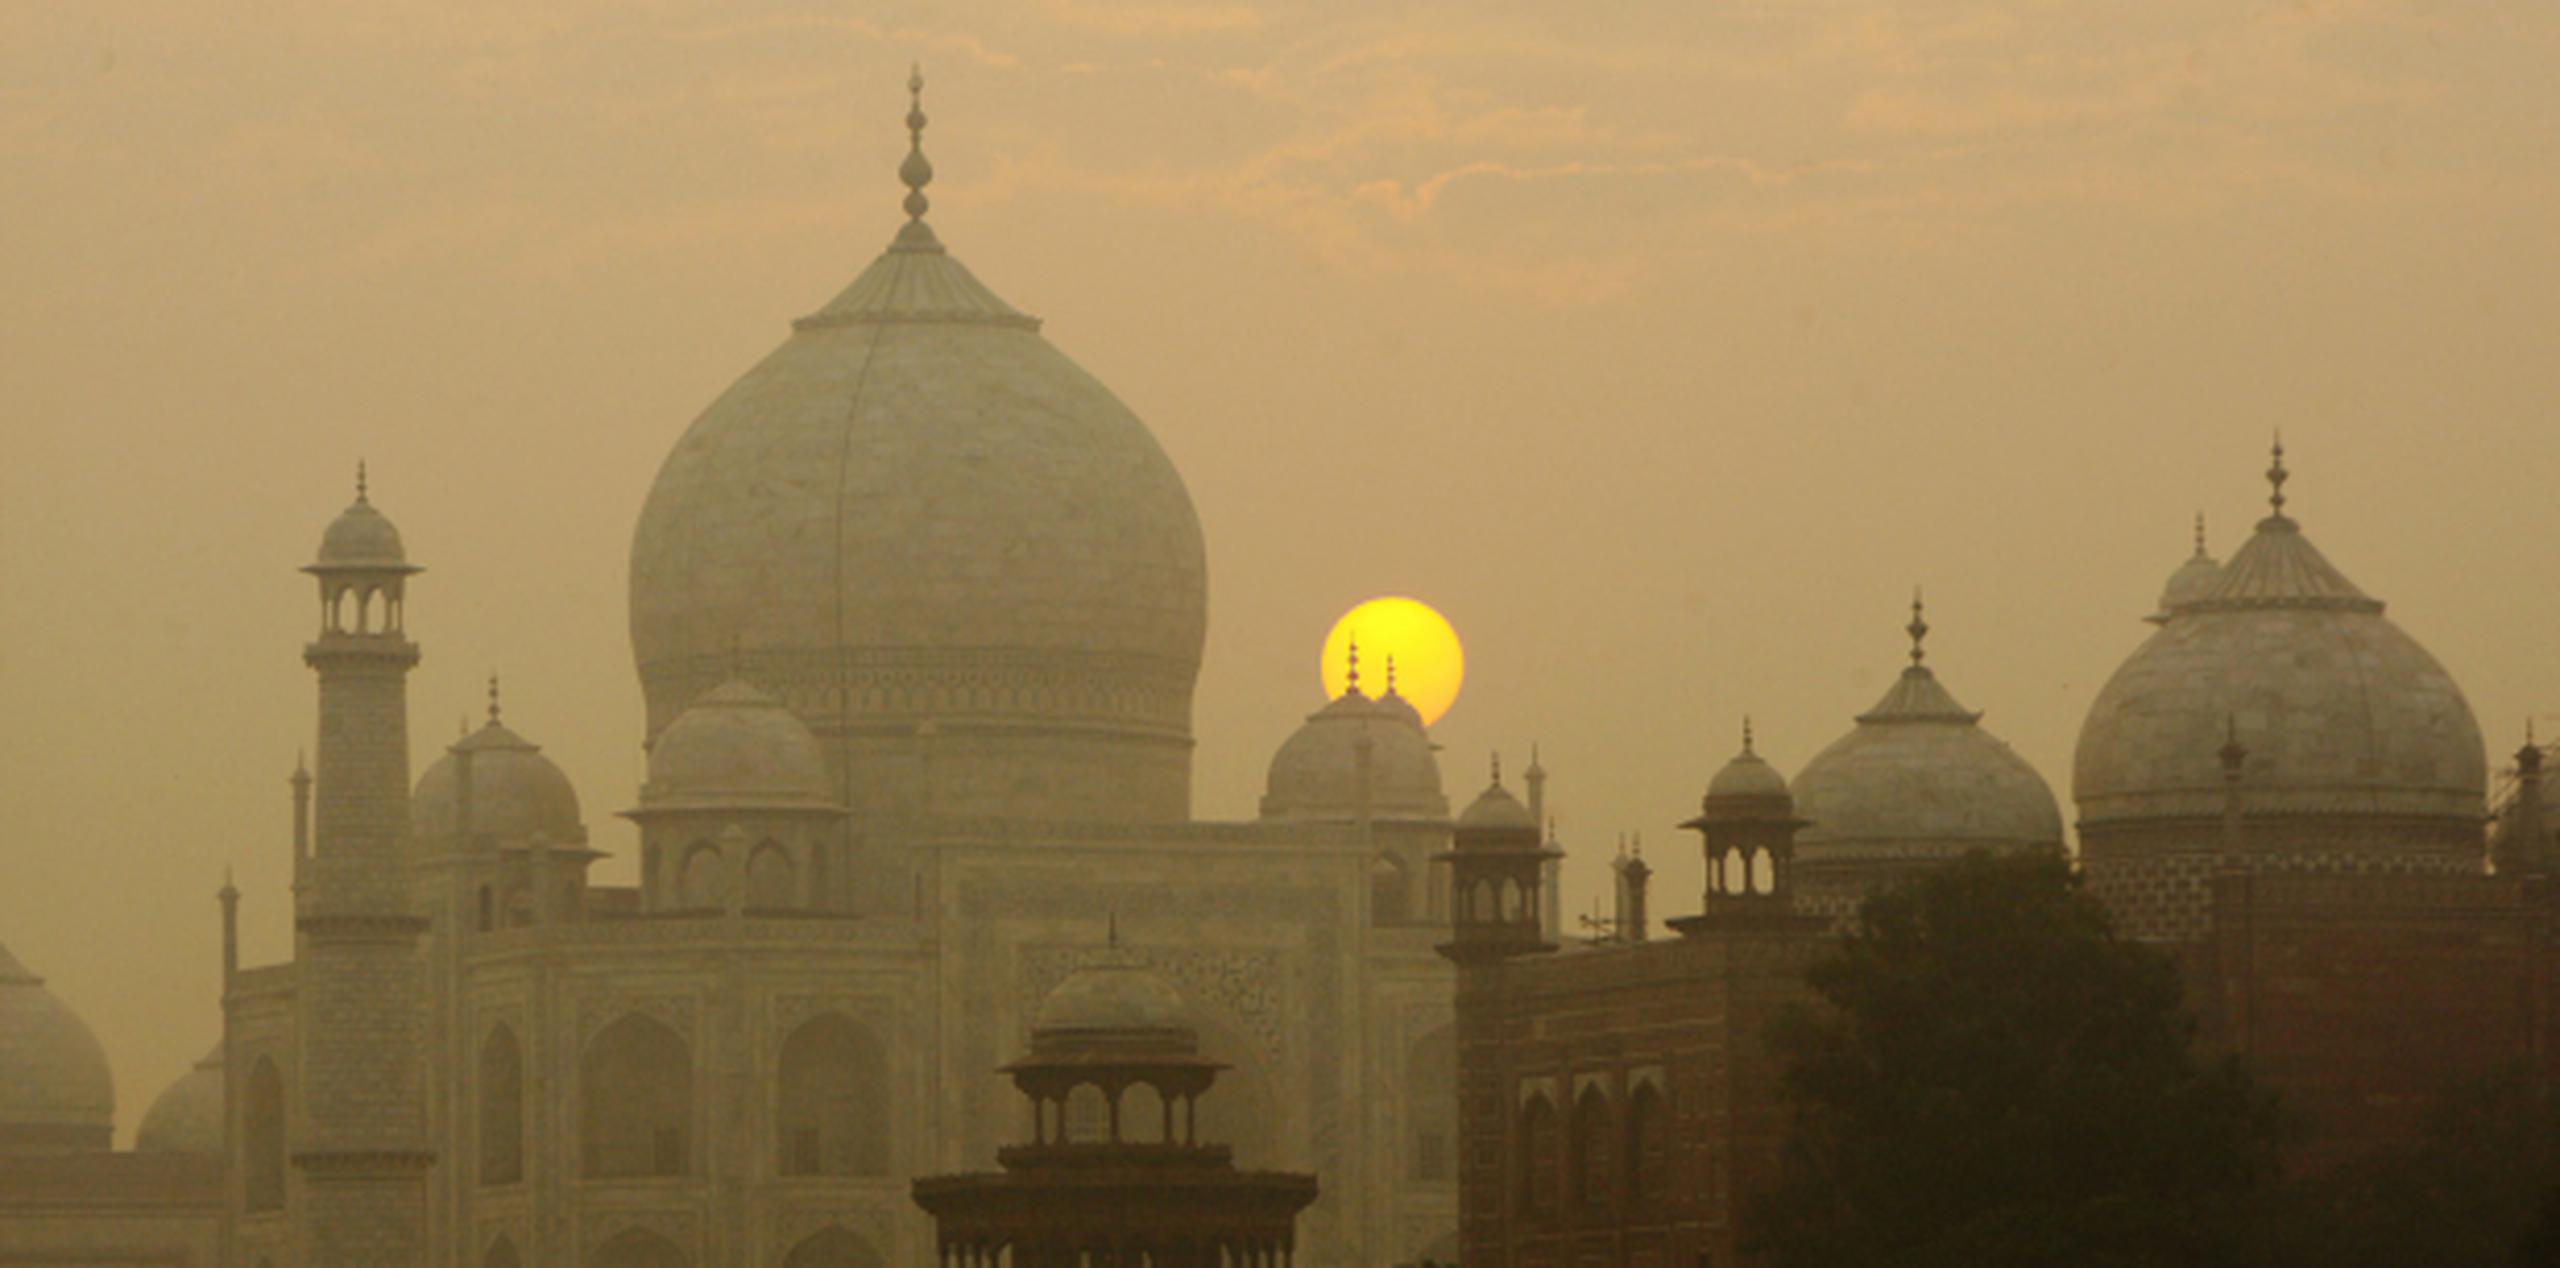 El Taj Mahal es uno de los monumentos más atractivos de India. (AP Photo/Gurinder Osan)